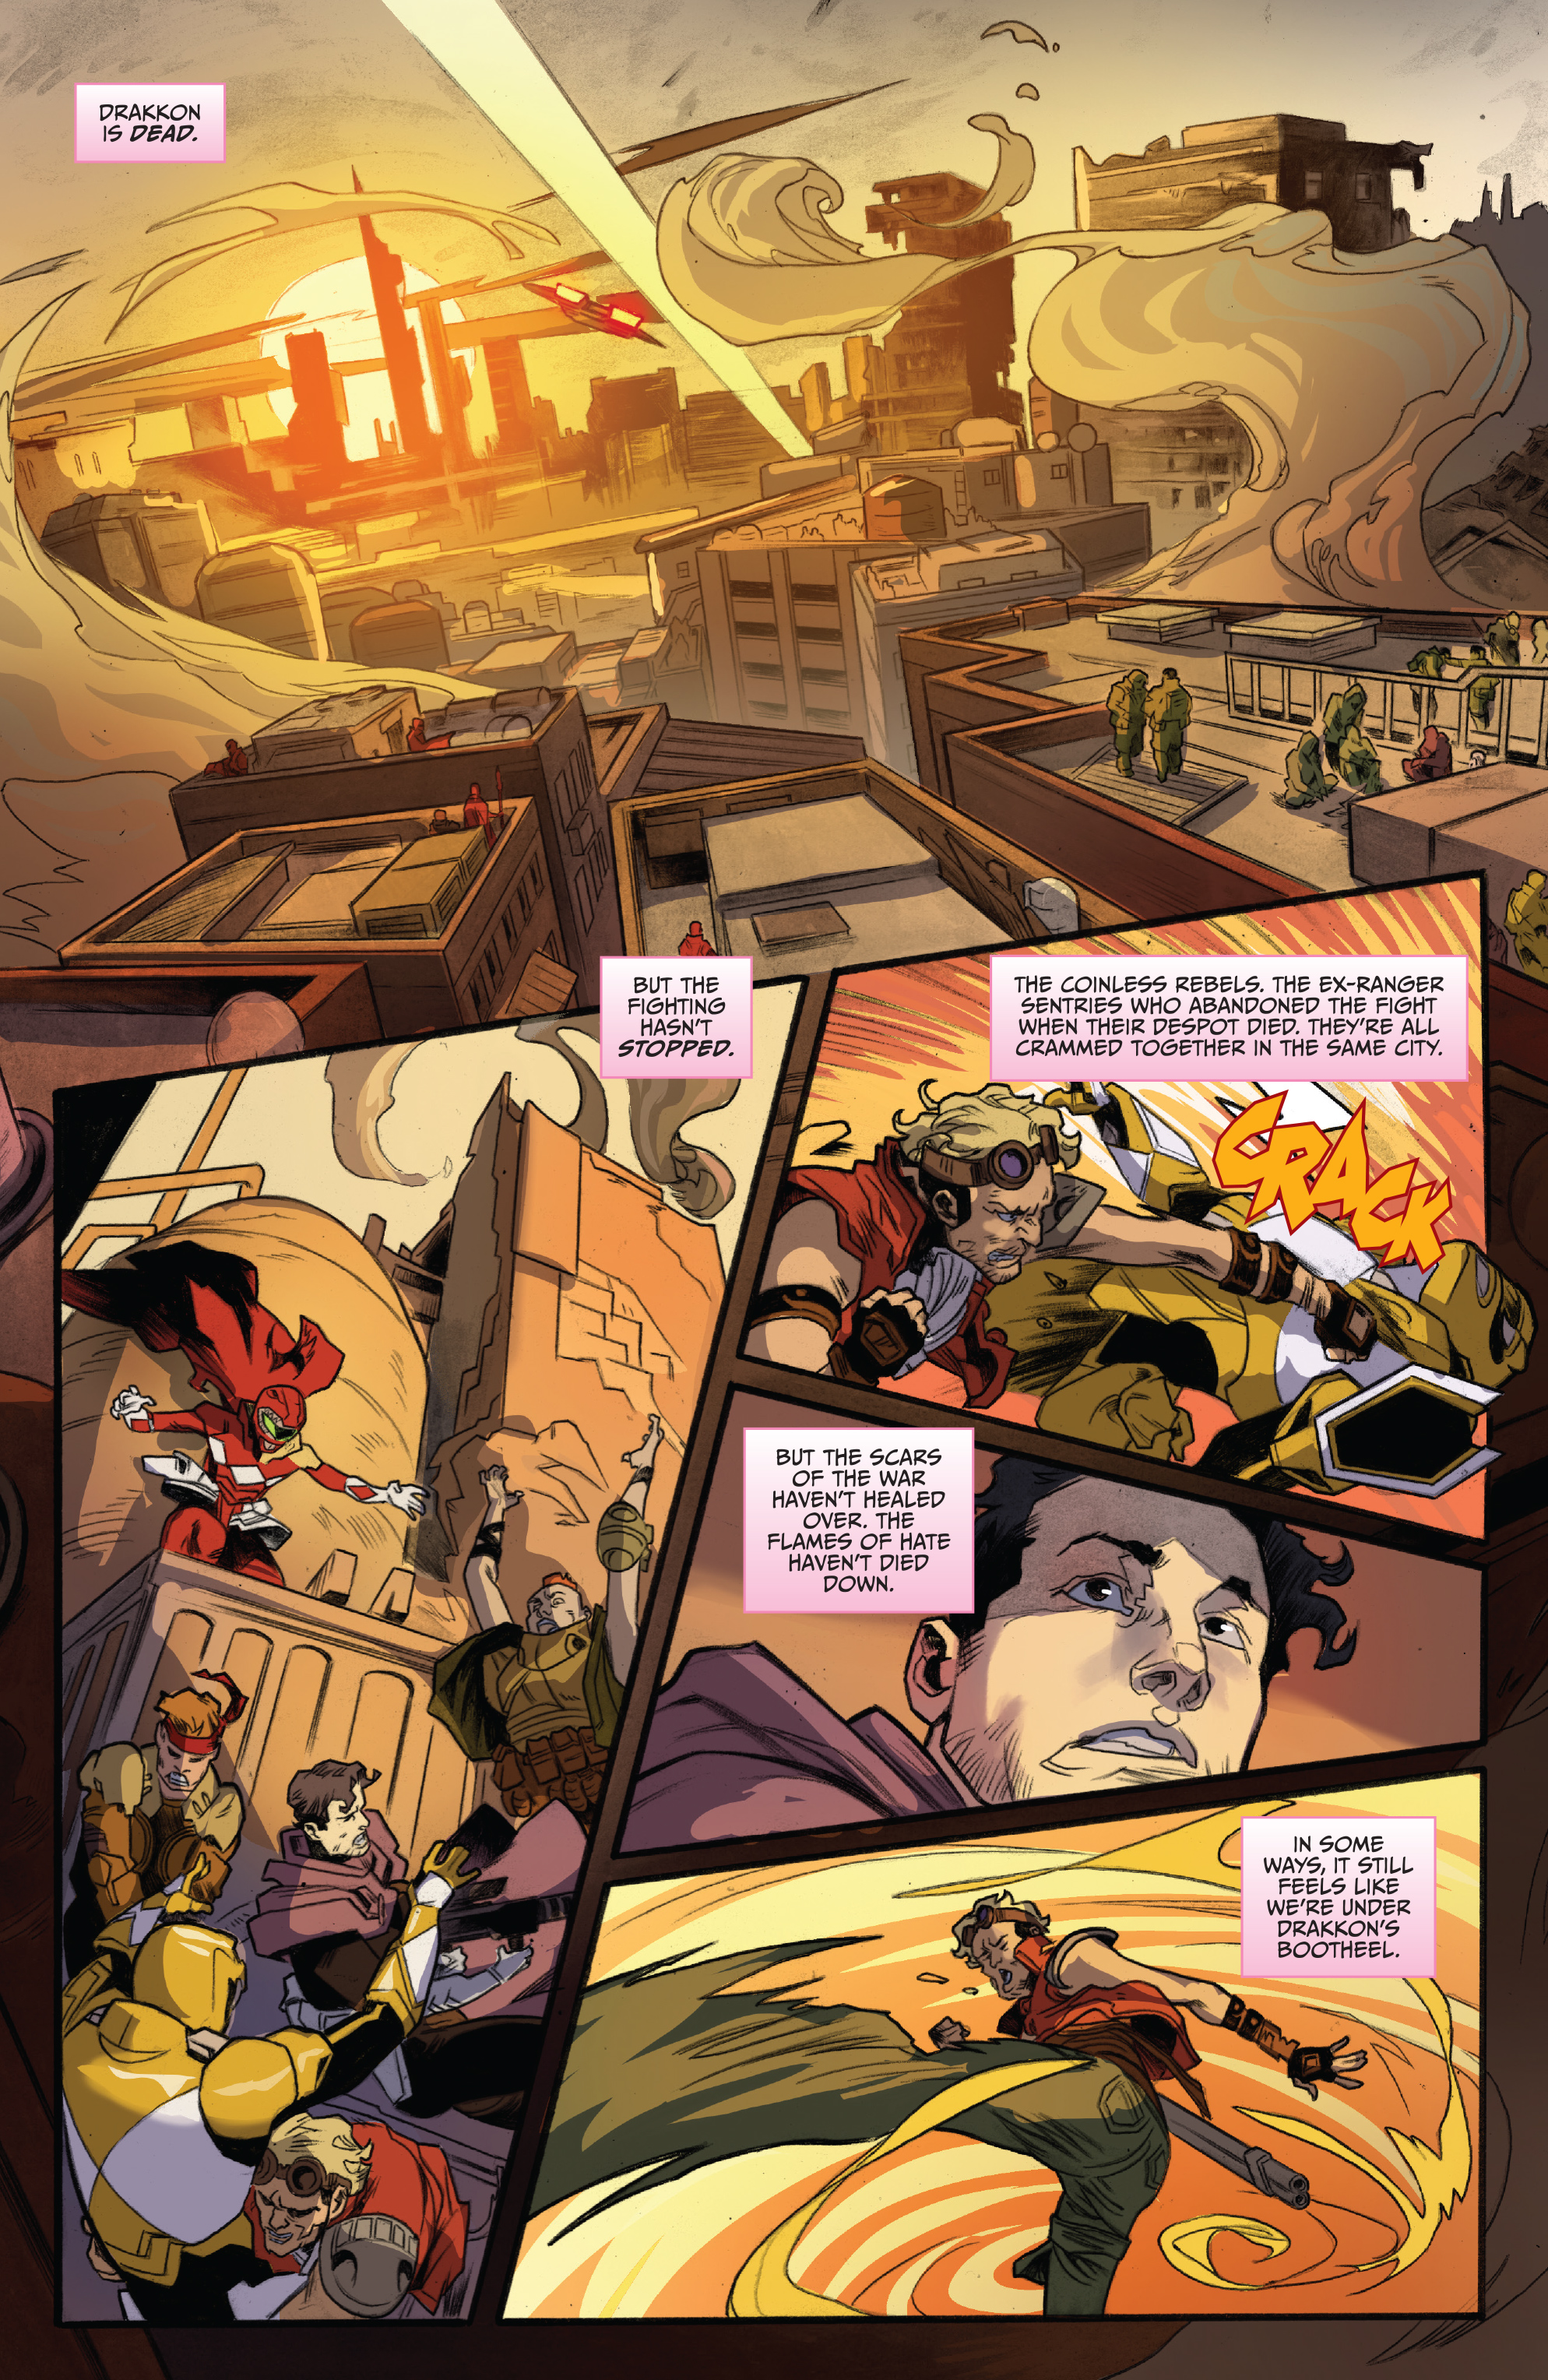 Power Rangers: Drakkon New Dawn (2020-): Chapter 1 - Page 3